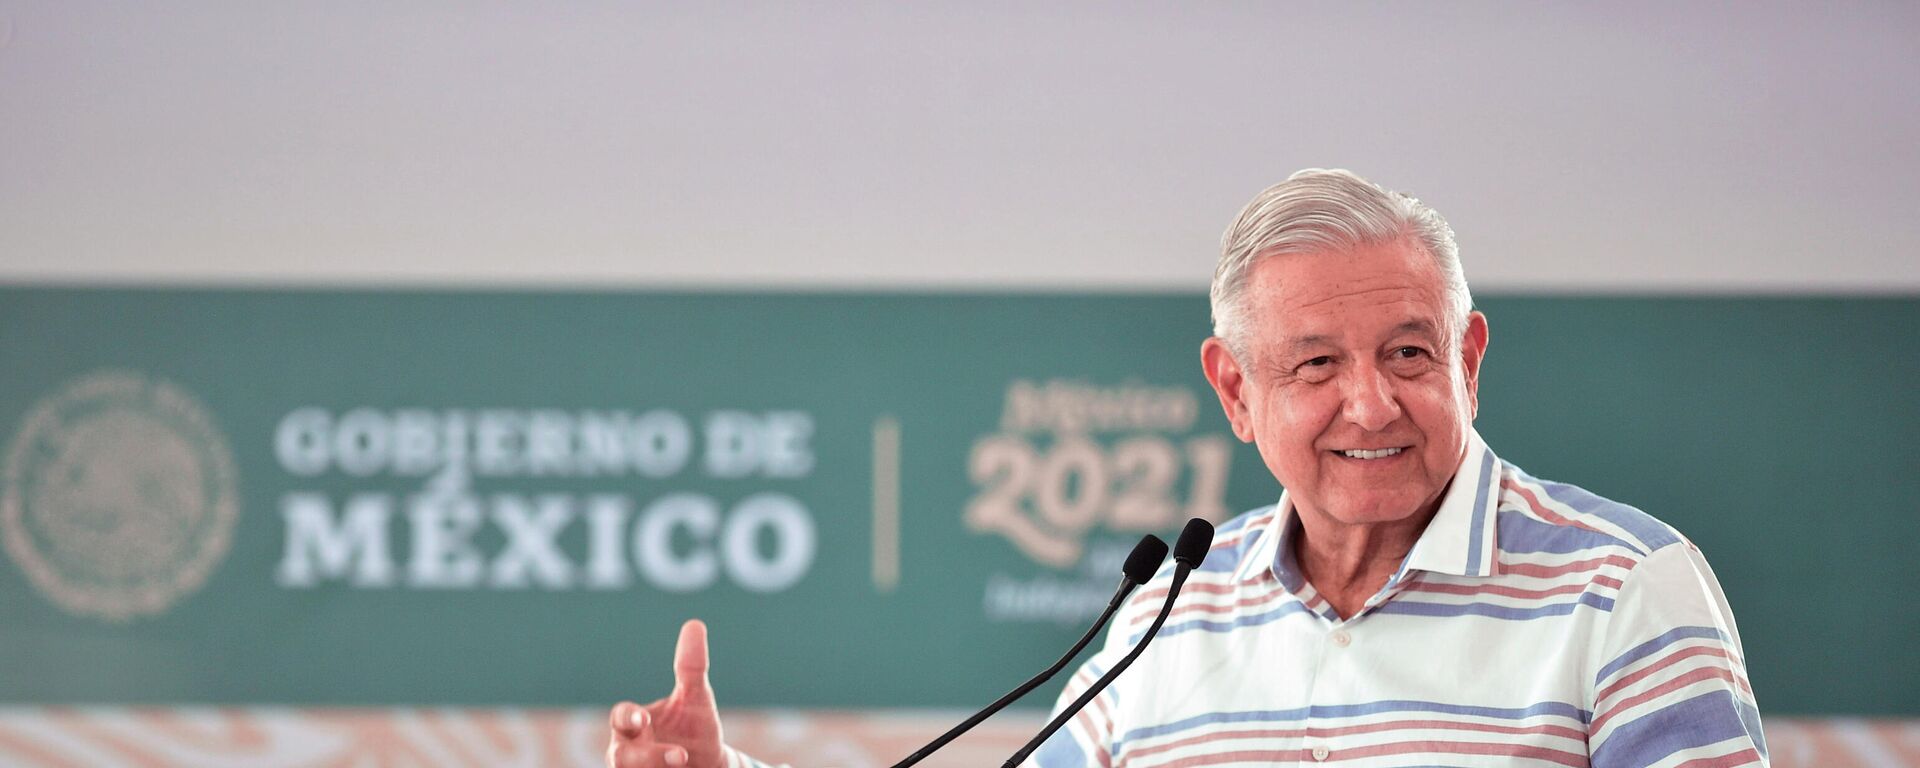 Andrés Manuel López Obrador, presidente de México - Sputnik Mundo, 1920, 04.10.2021